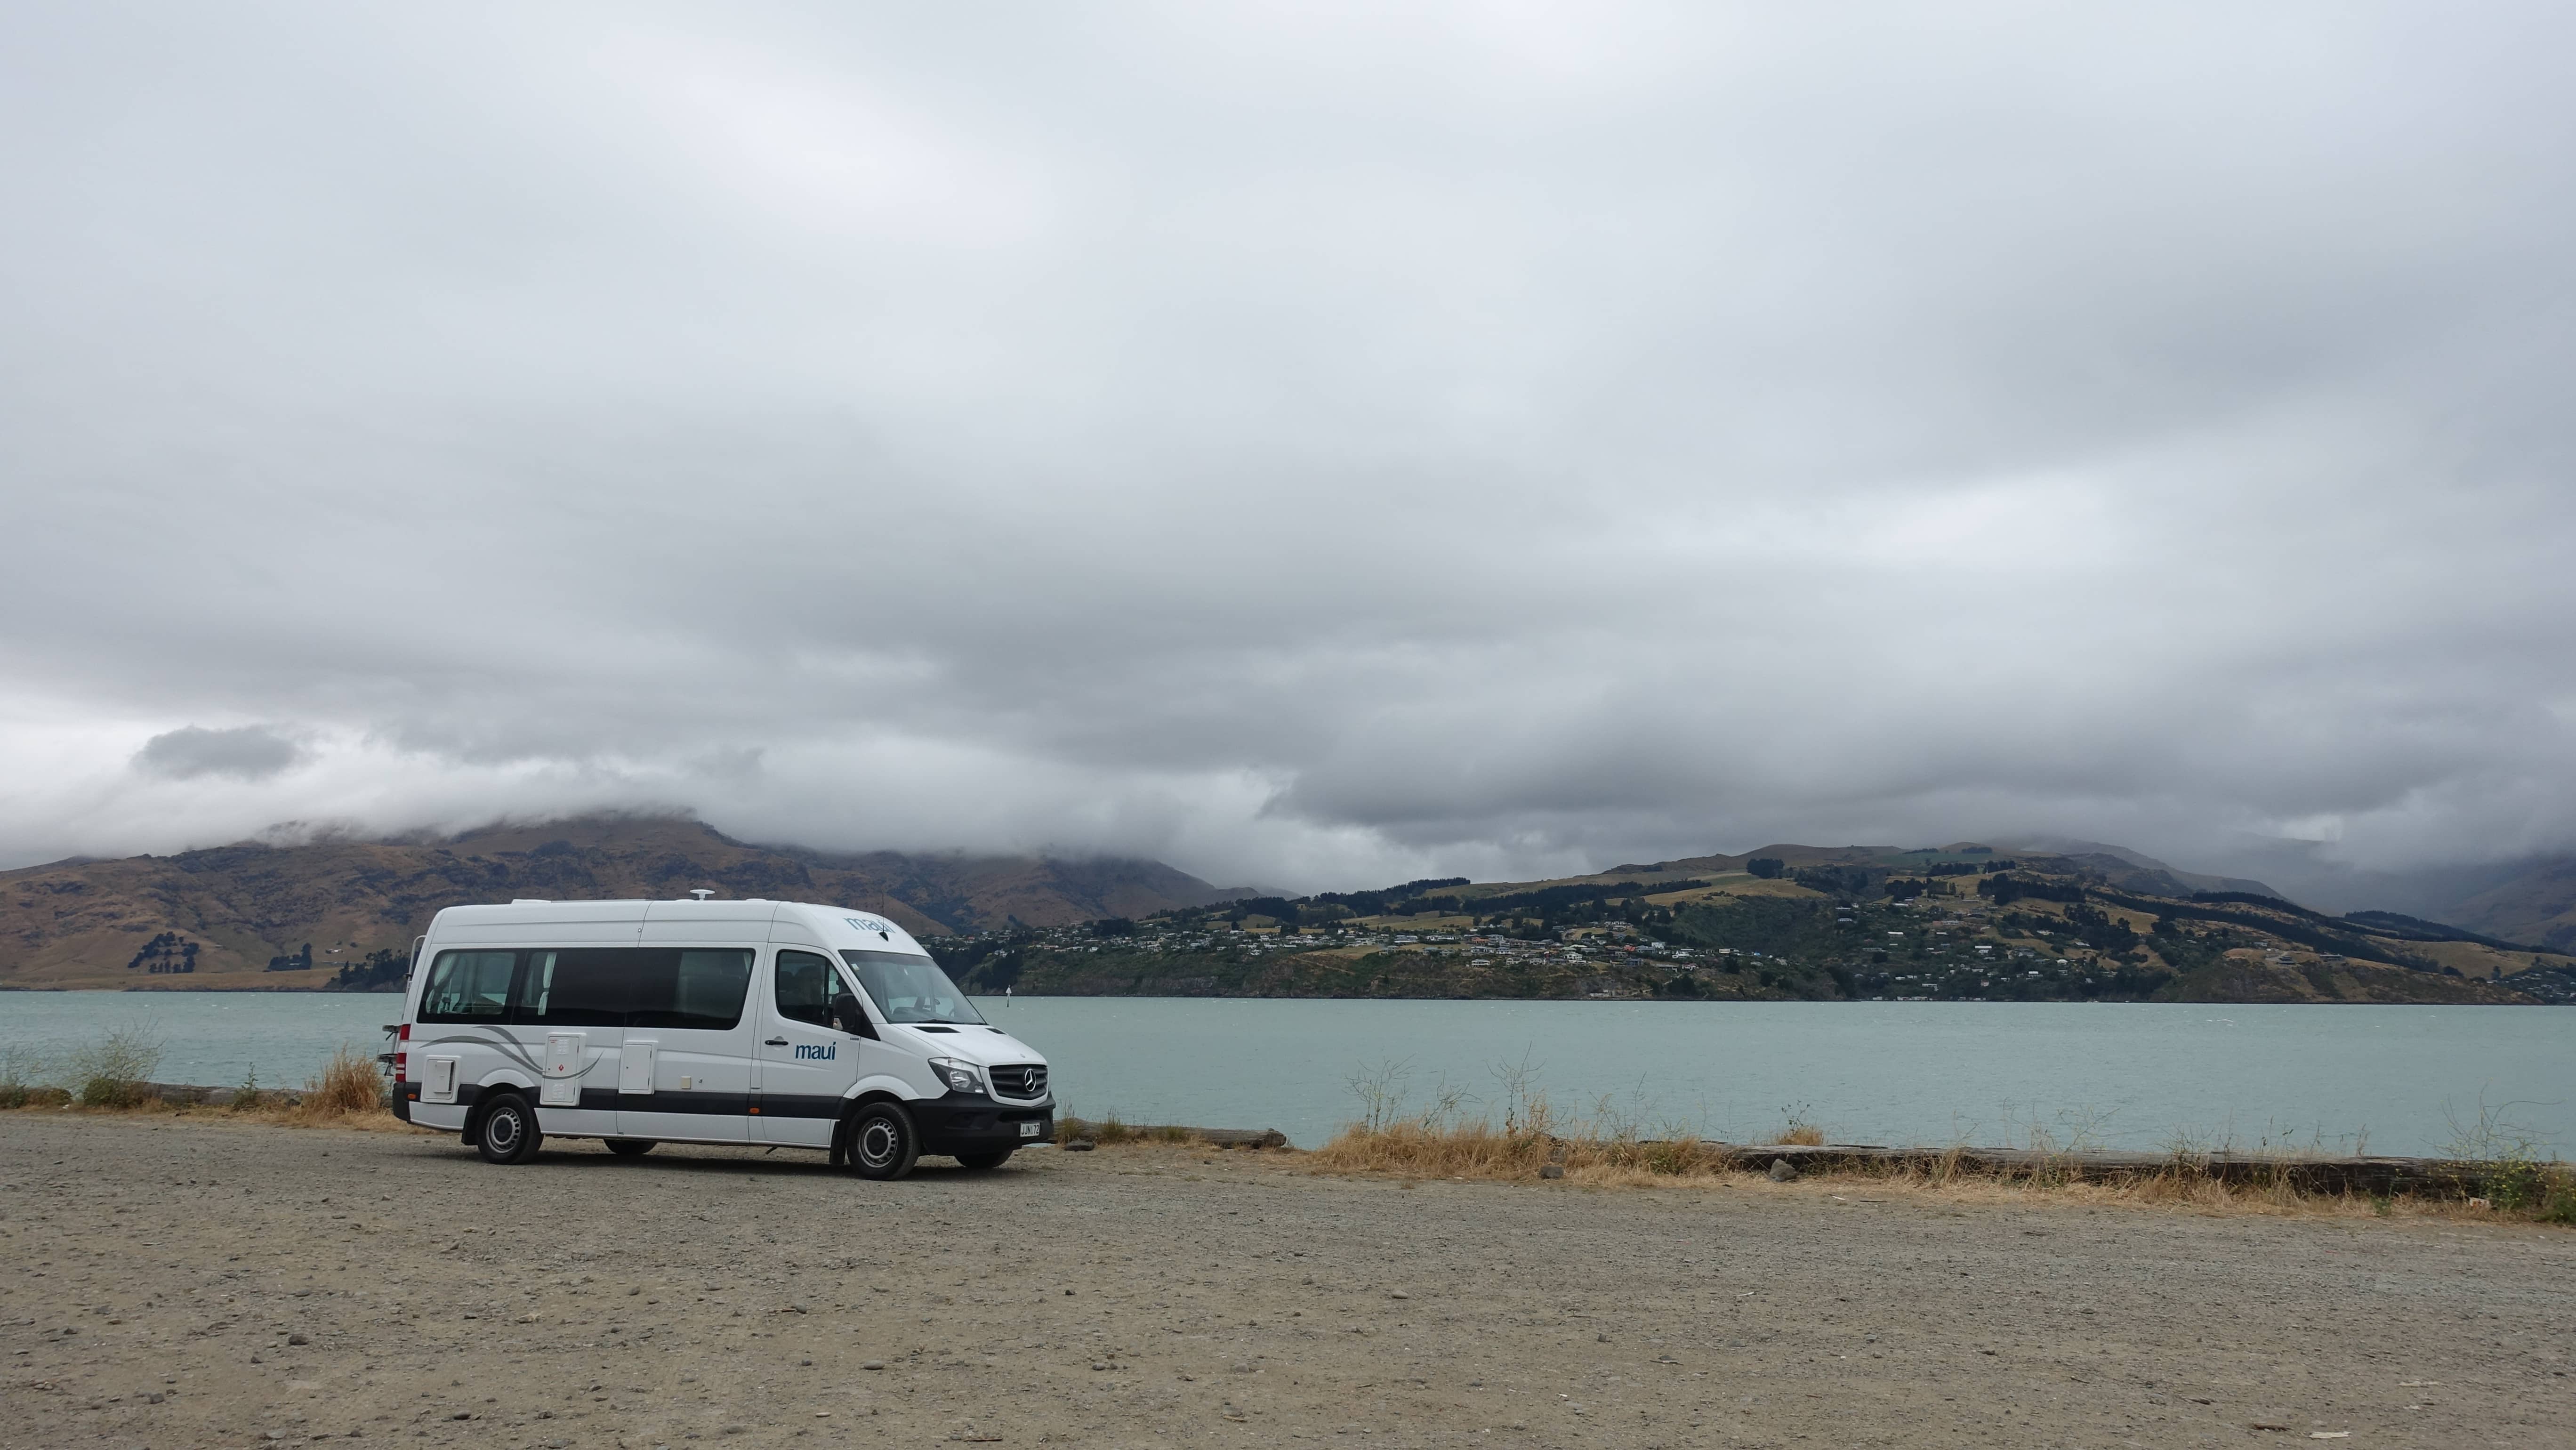 Der Maui-Camper in der Nähe von Christchurch in Neuseeland.